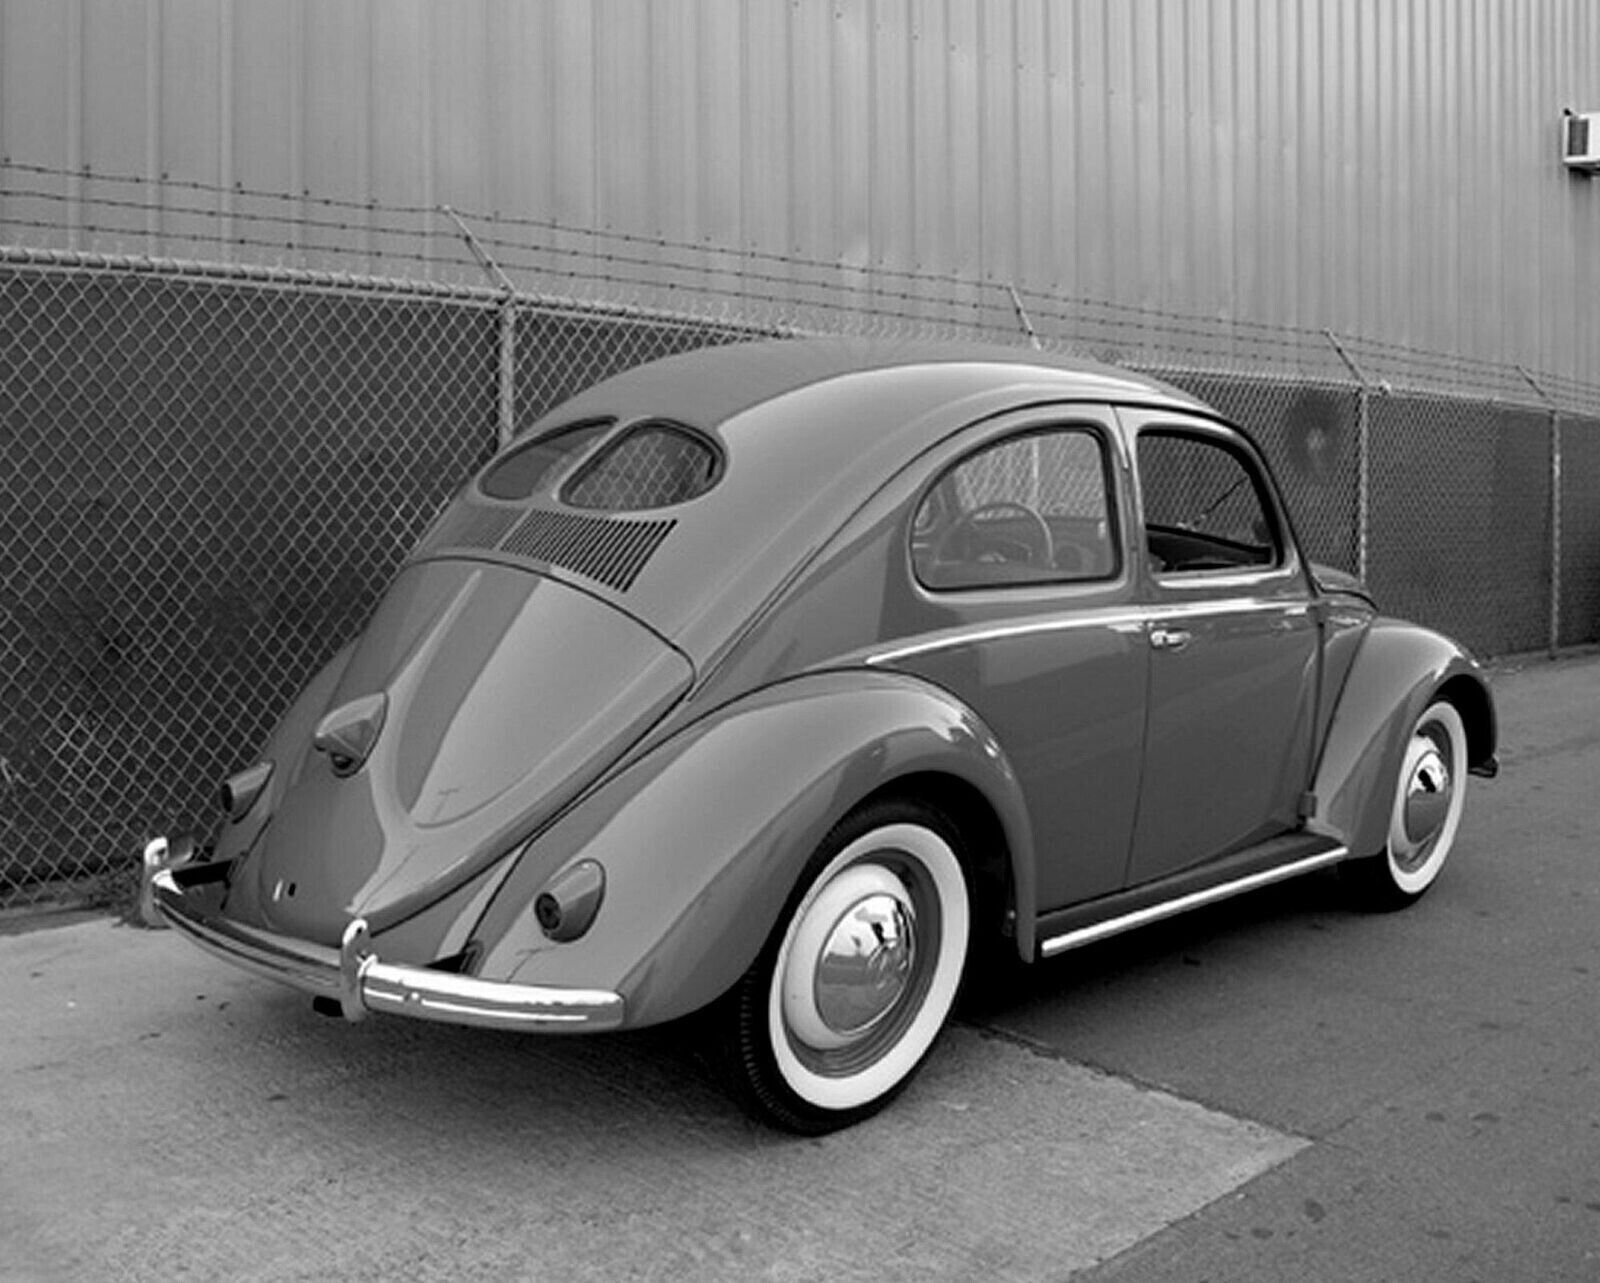 1949 VOLKSWAGEN Bug SPLIT WINDOW Beetle Classic Car Poster Photo 11x17